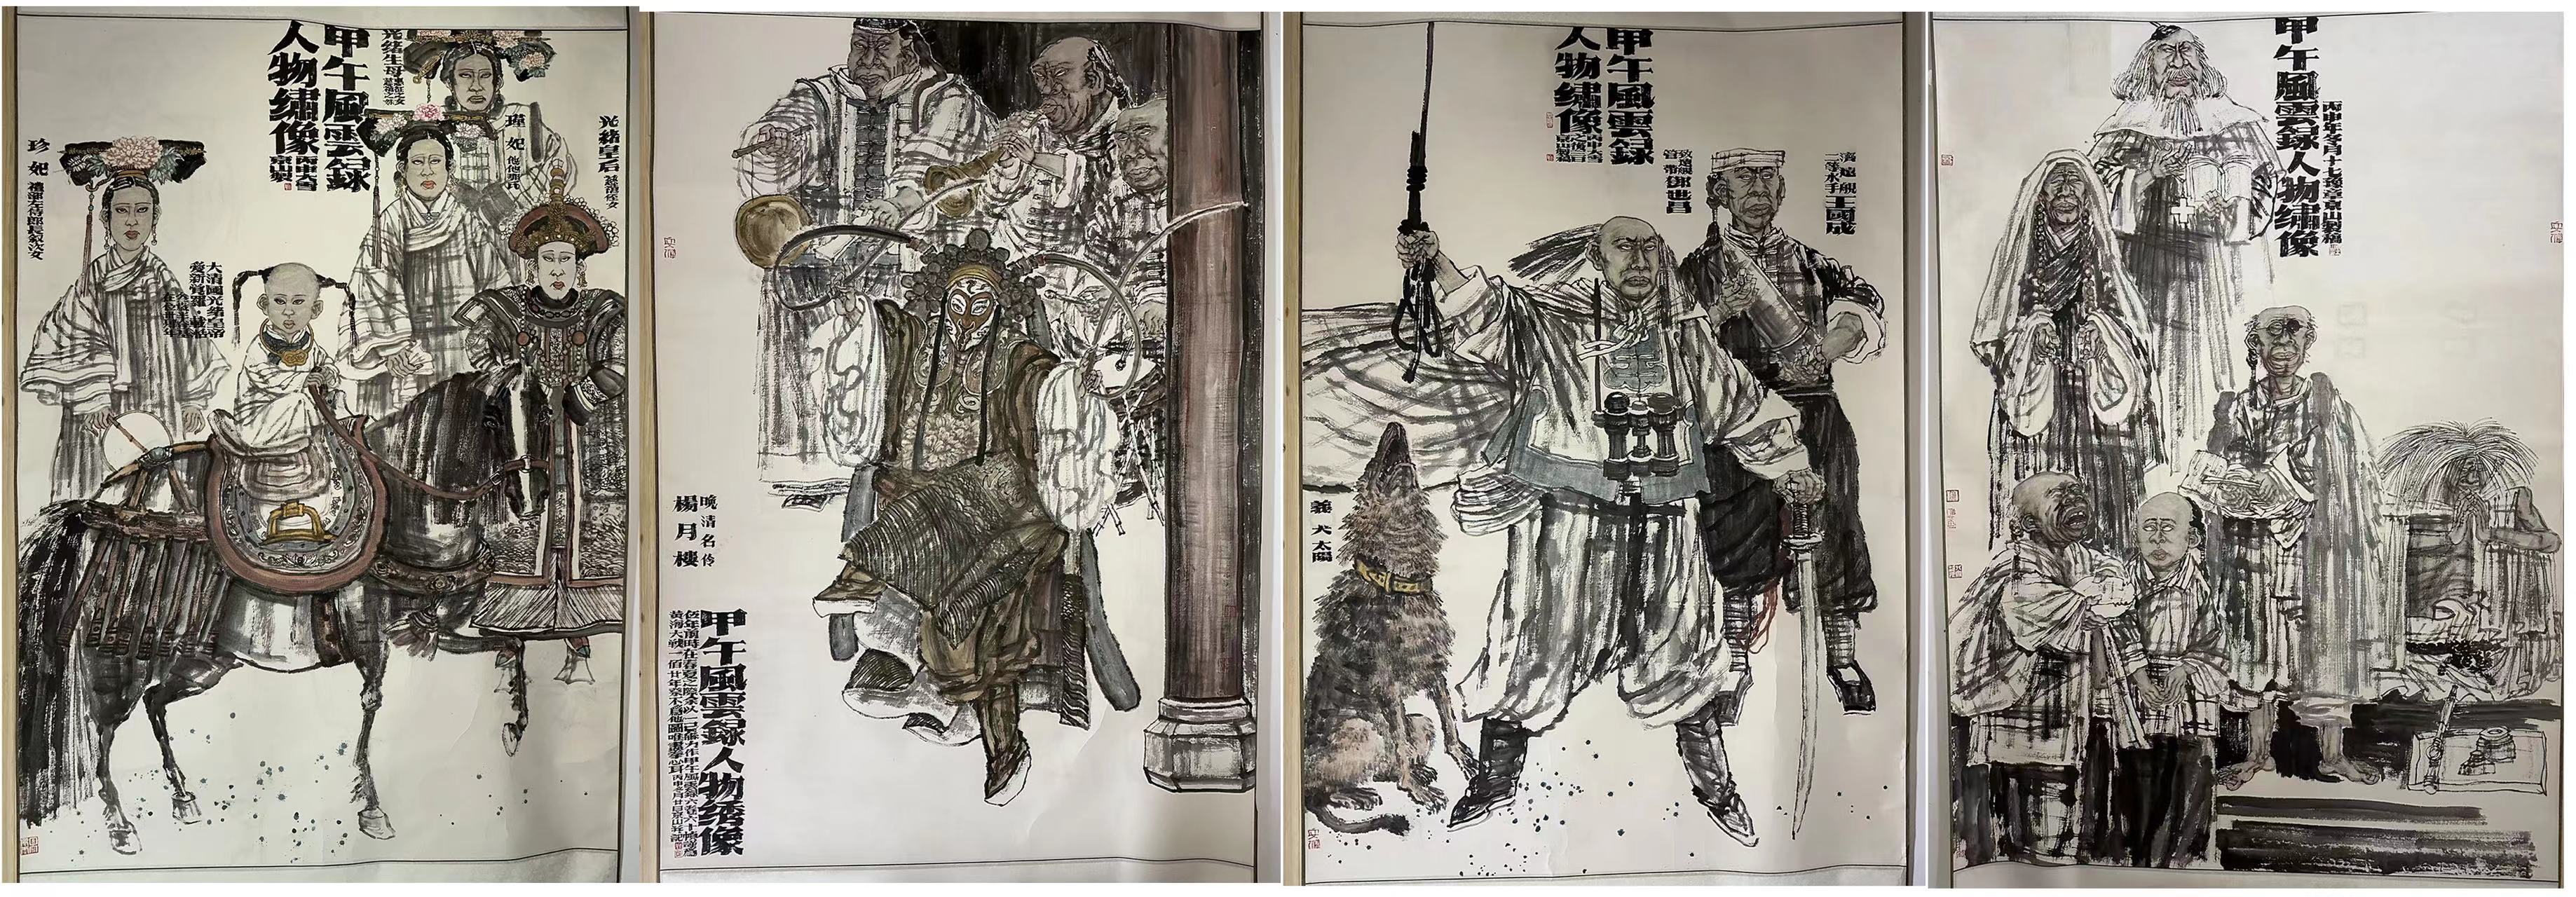 著名画家周京山先生向南昌市博物馆捐赠精品画作《甲午风云录人物绣像》